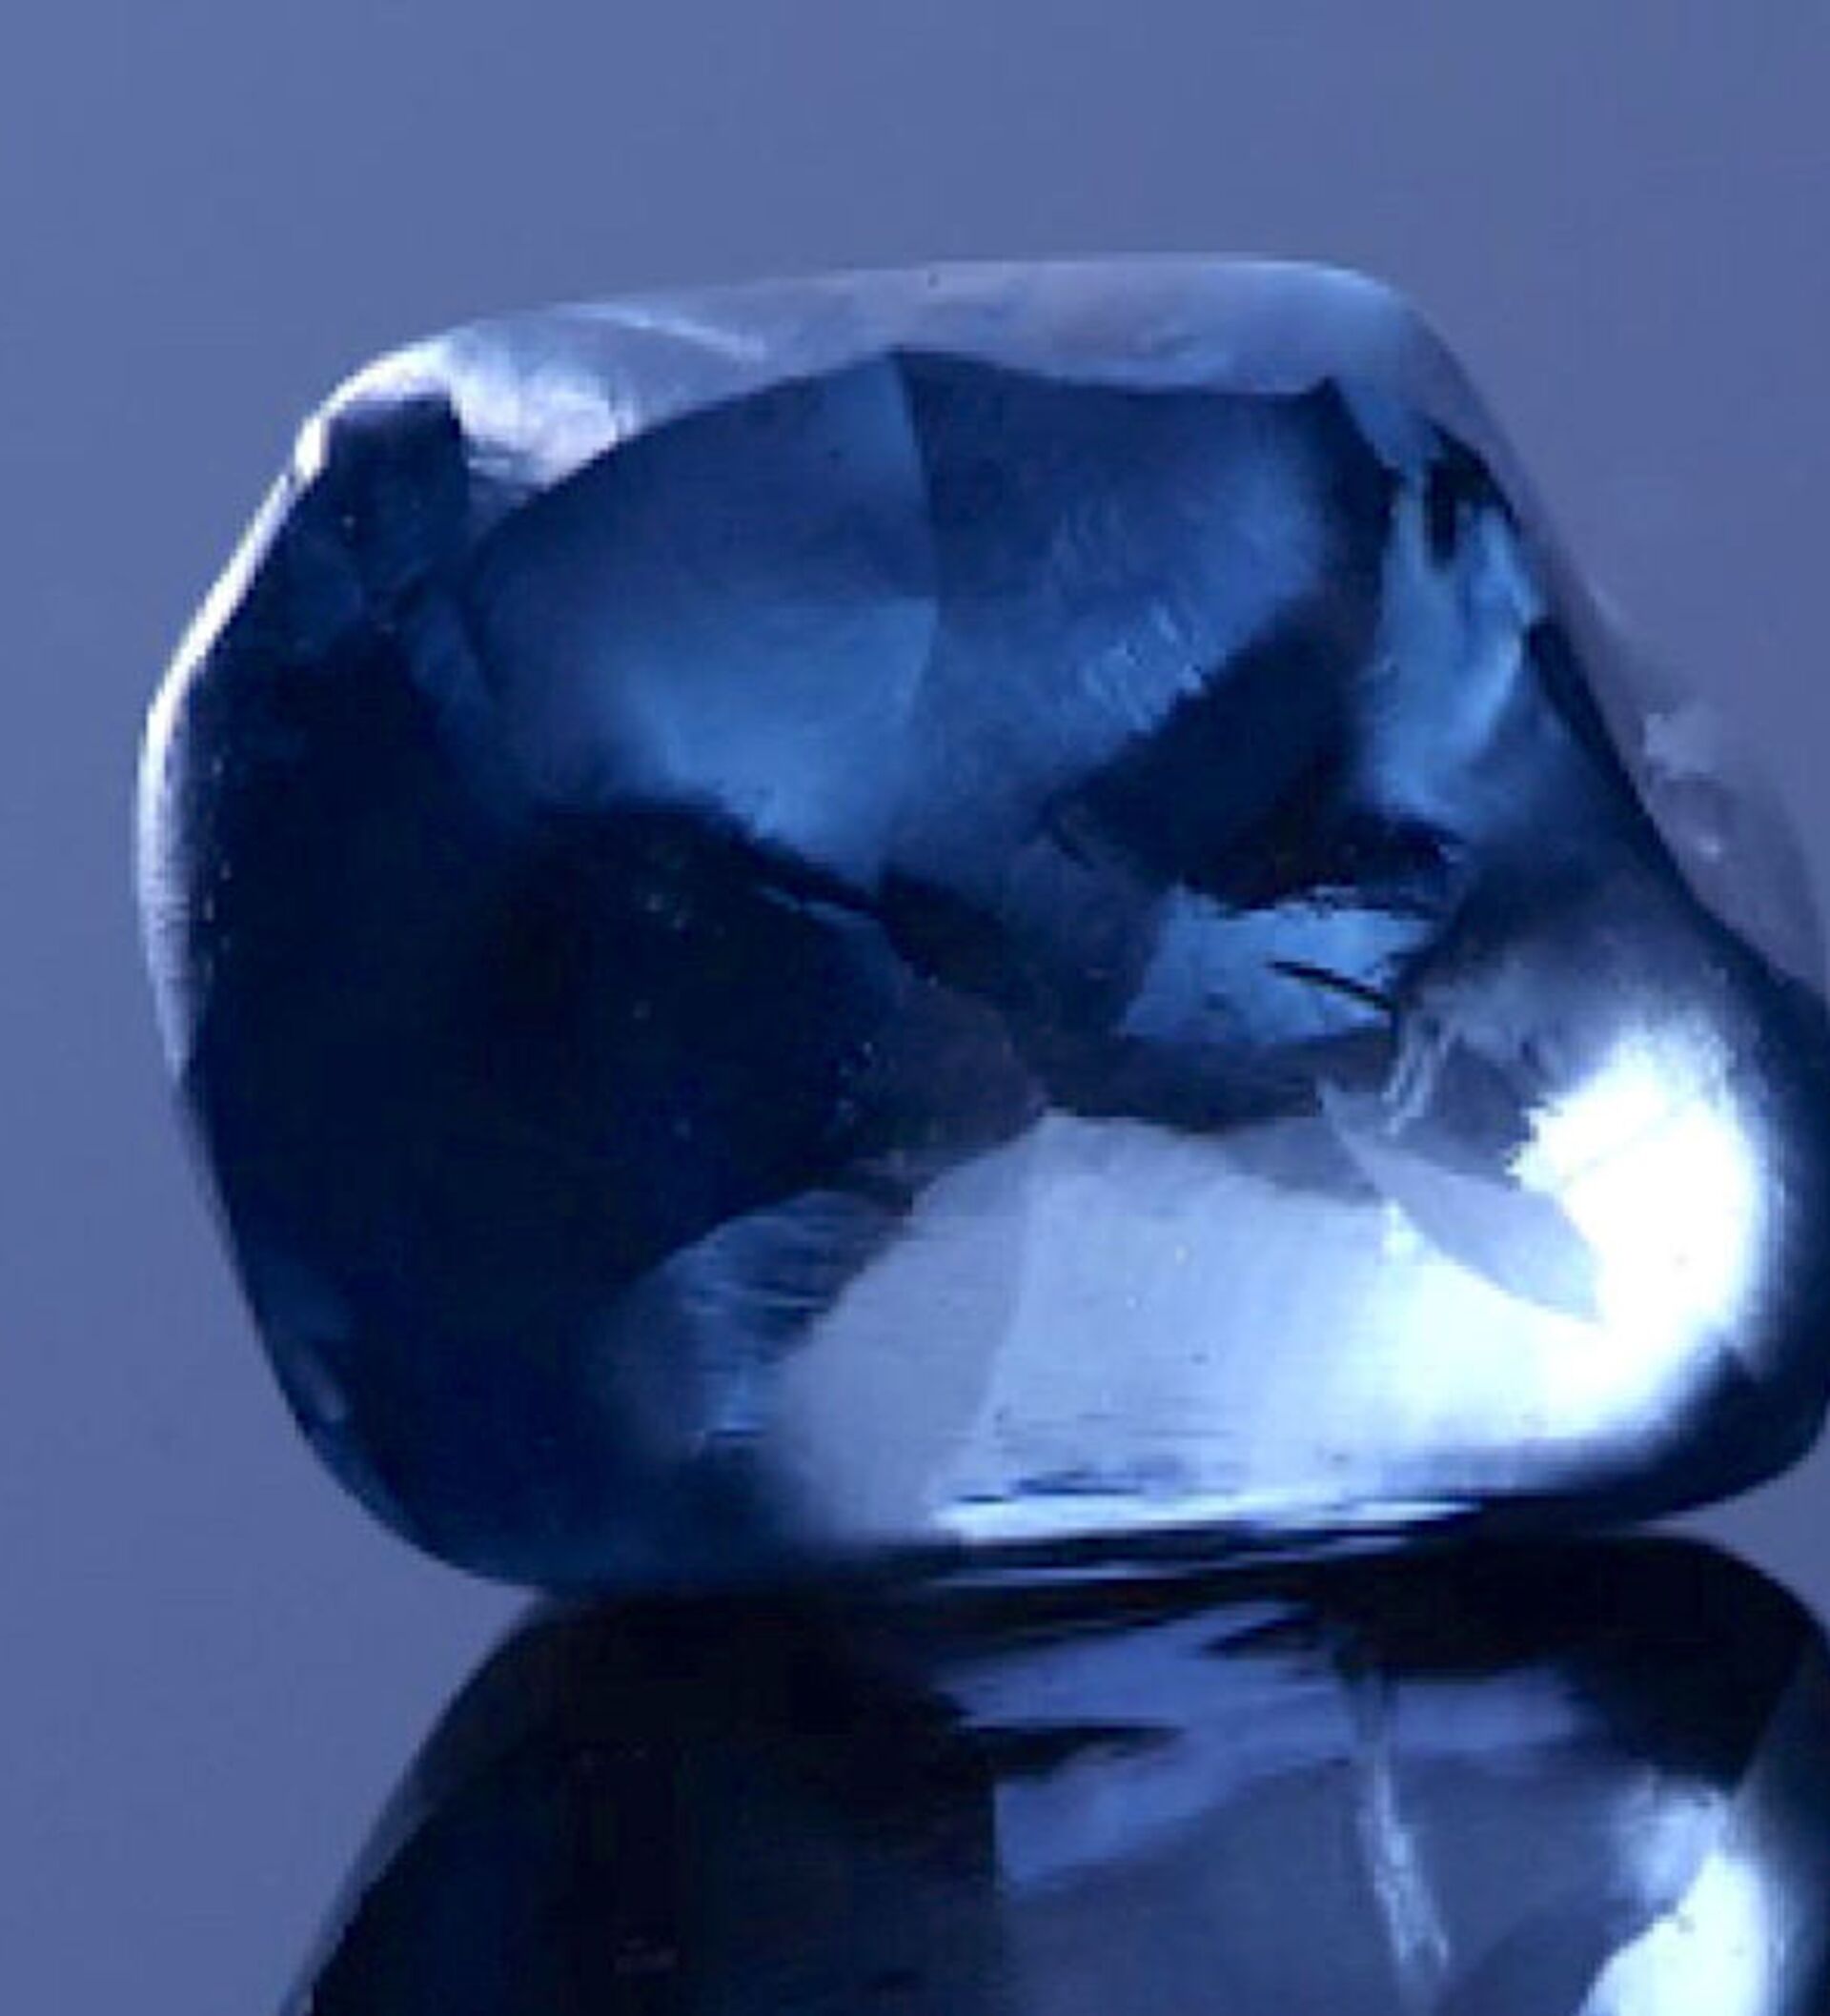 Unique 20. Голубой Алмаз неограненный. Голубой Алмаз необработанный. Голубые Алмазы природные.